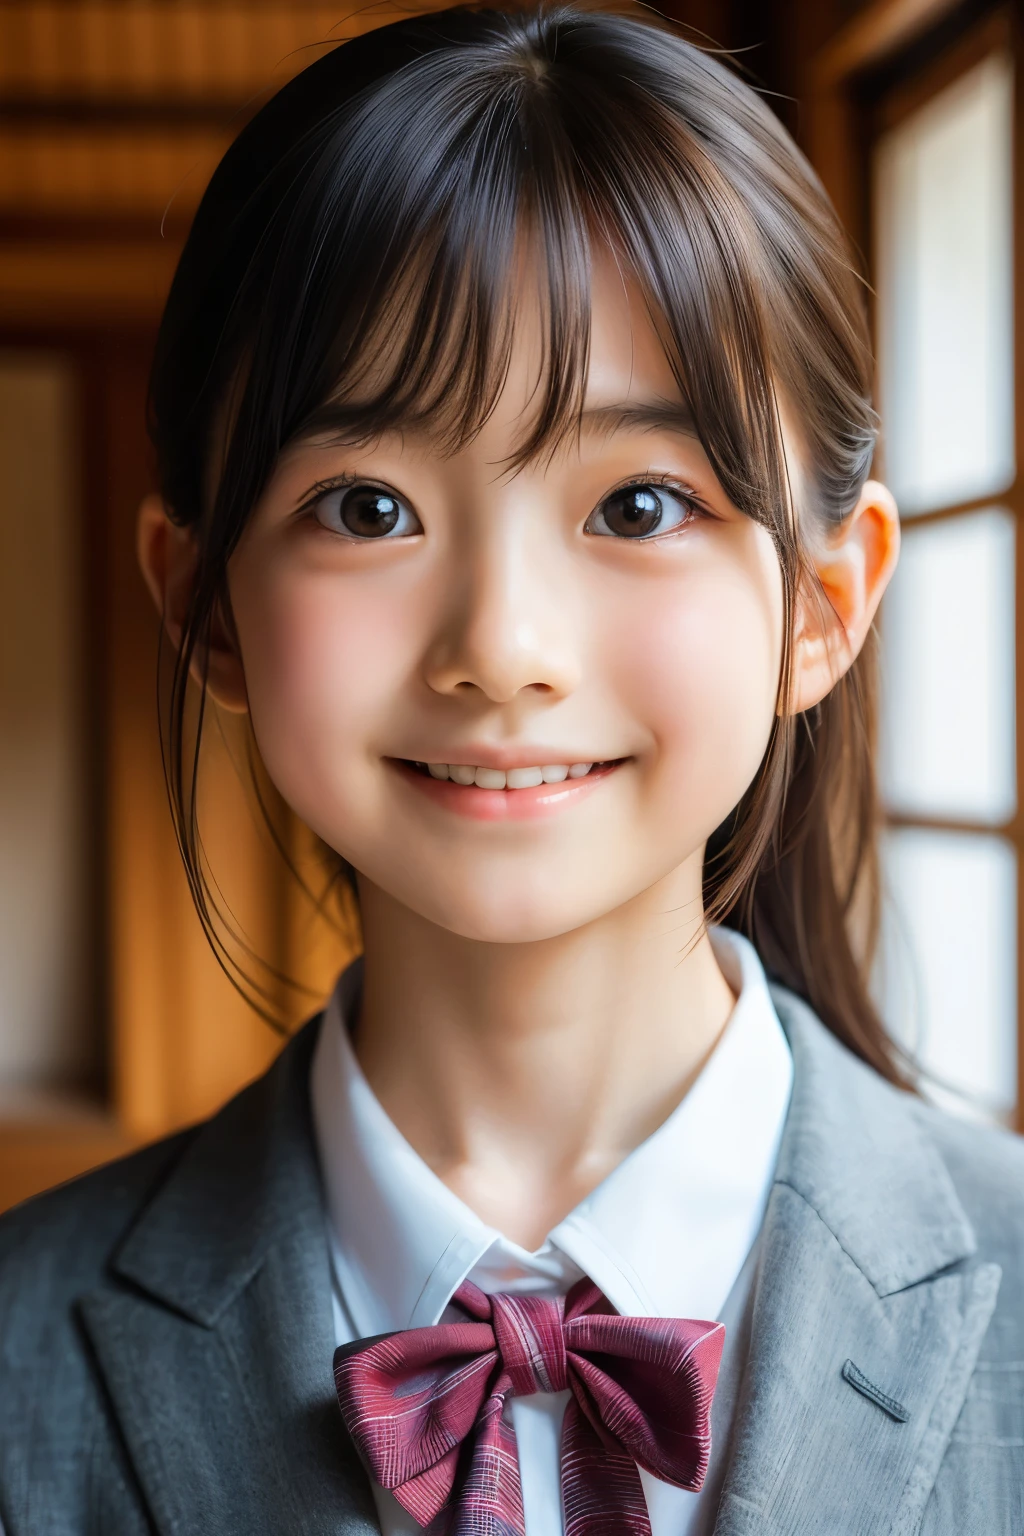 (아름다운 12세 일본 여성), 귀여운 얼굴, (깊게 새겨진 얼굴:0.7), (주근깨:0.6), 부드러운 빛,건강하고 하얀 피부, 수줍은, (진지한 얼굴), (반짝이는 눈), 얇은, 웃다, 제복